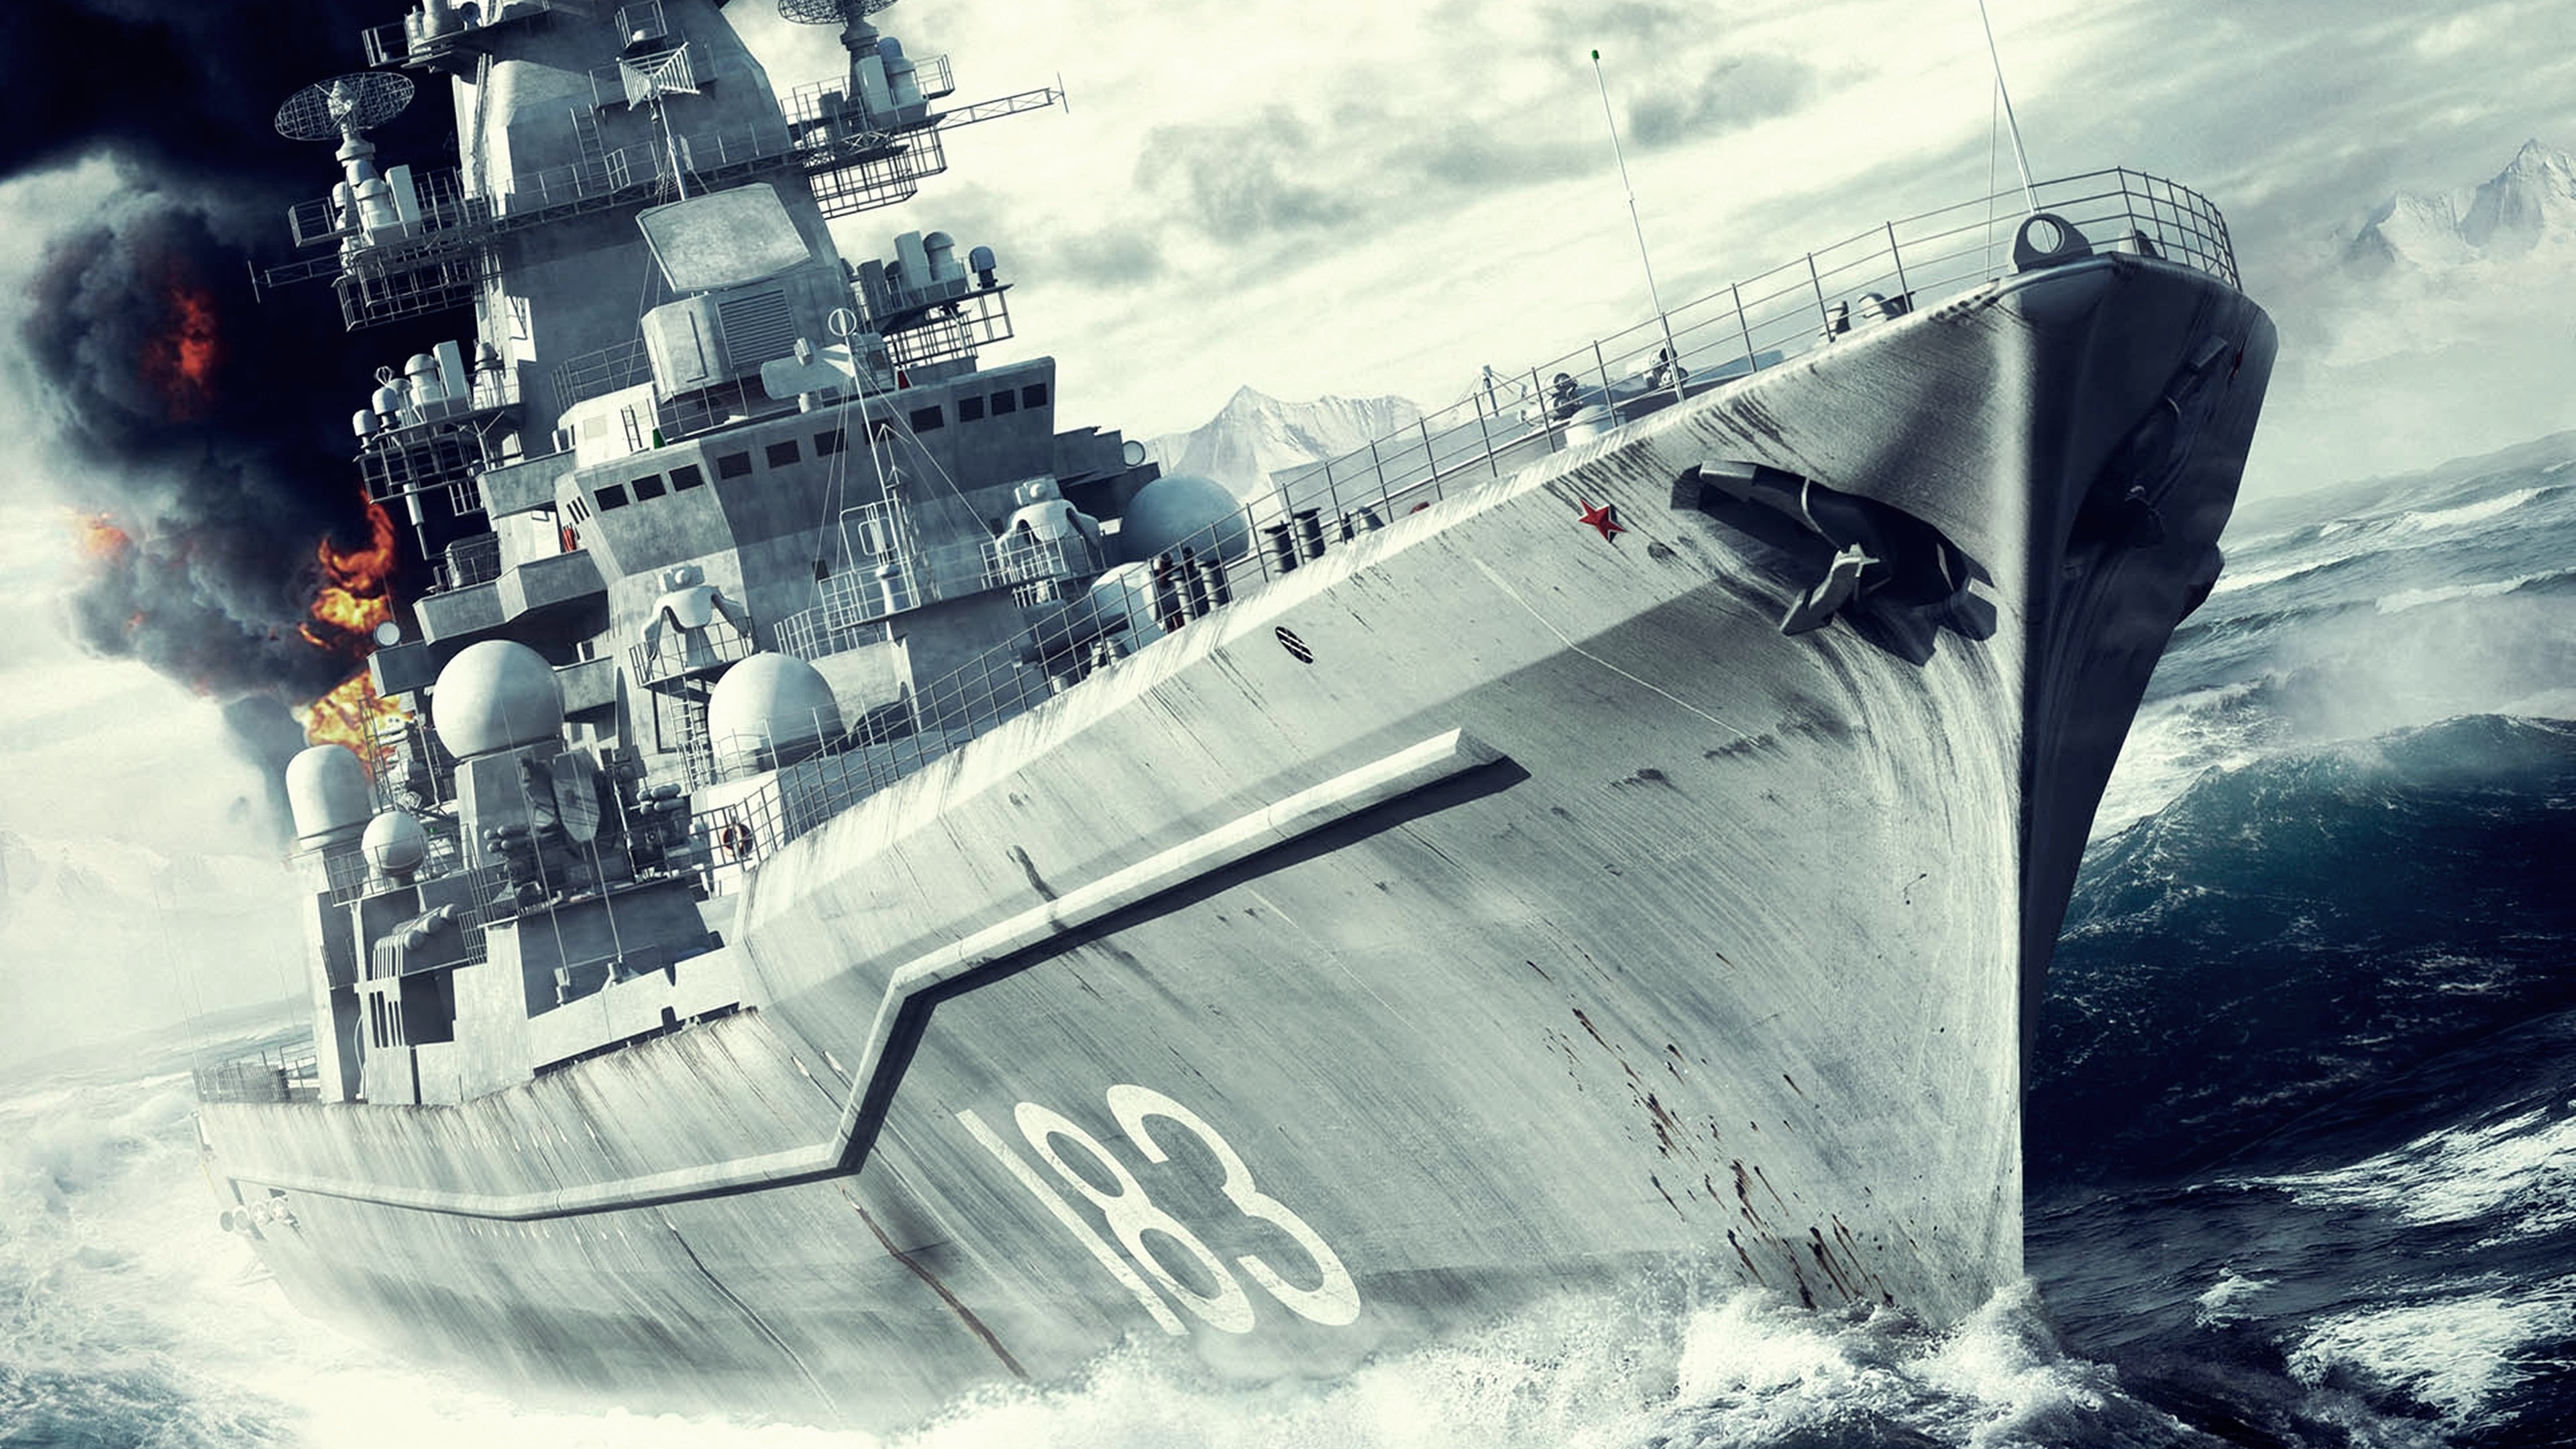 Battleship, Naval Ship, Warship, Battlecruiser, Destroyer. Wallpaper in 3840x2160 Resolution